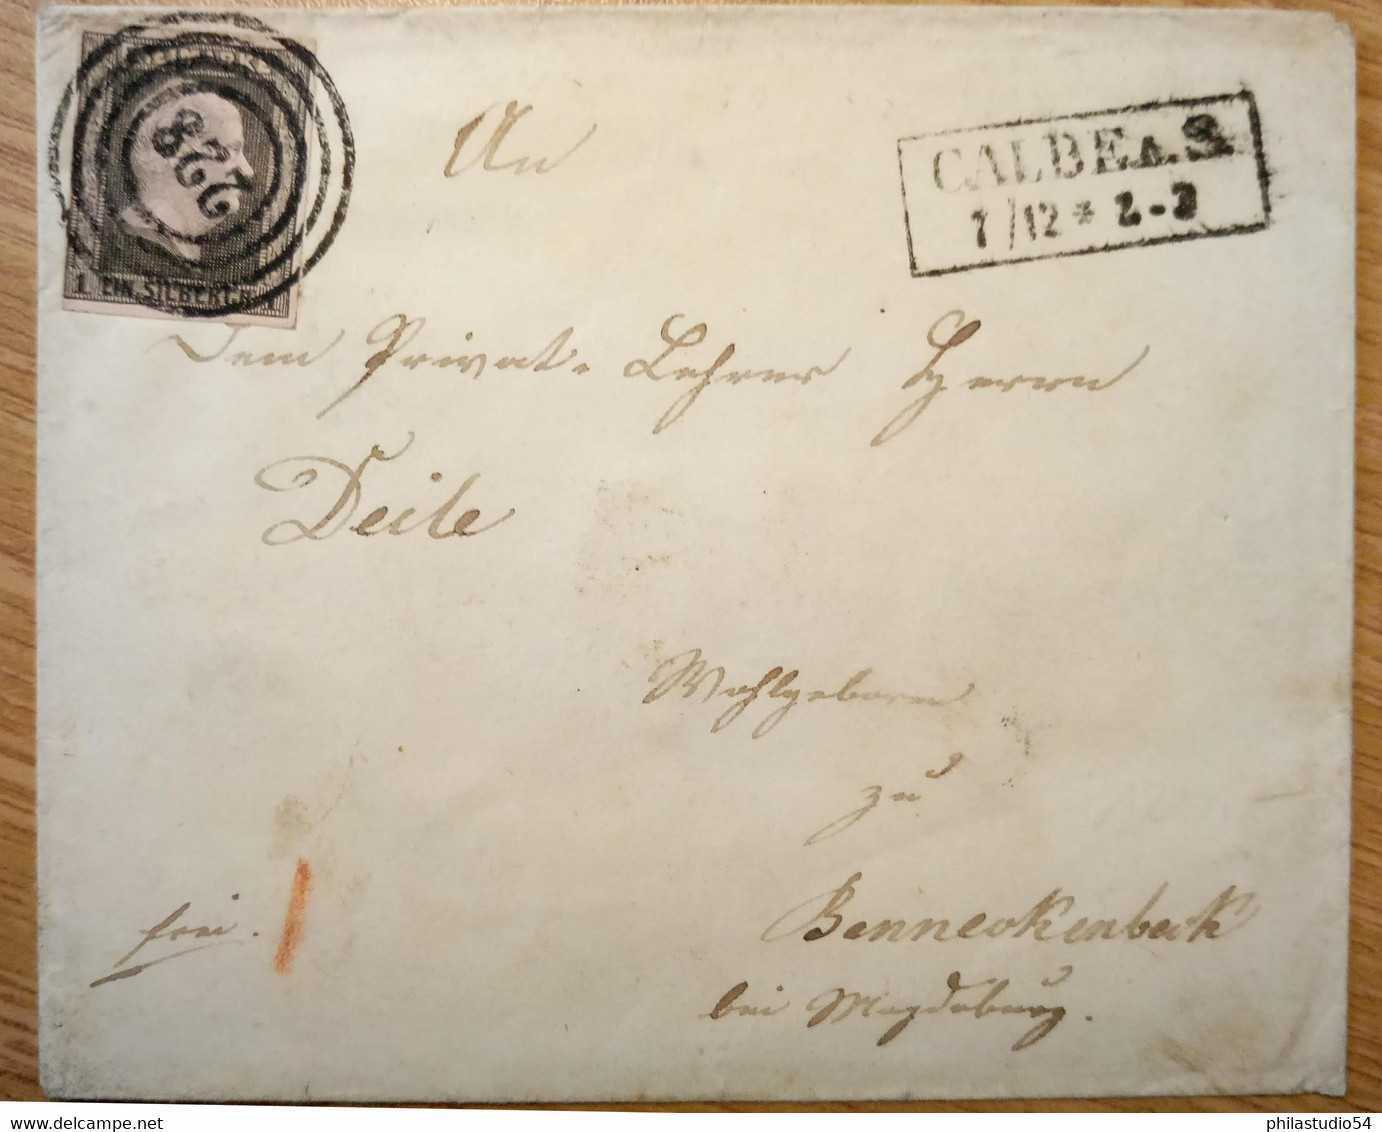 1851, Umschlag Mit 1 Sgr., Klarer Nummernstempel "228" Mit Ra2 "CALBE 1/12" - Lettres & Documents